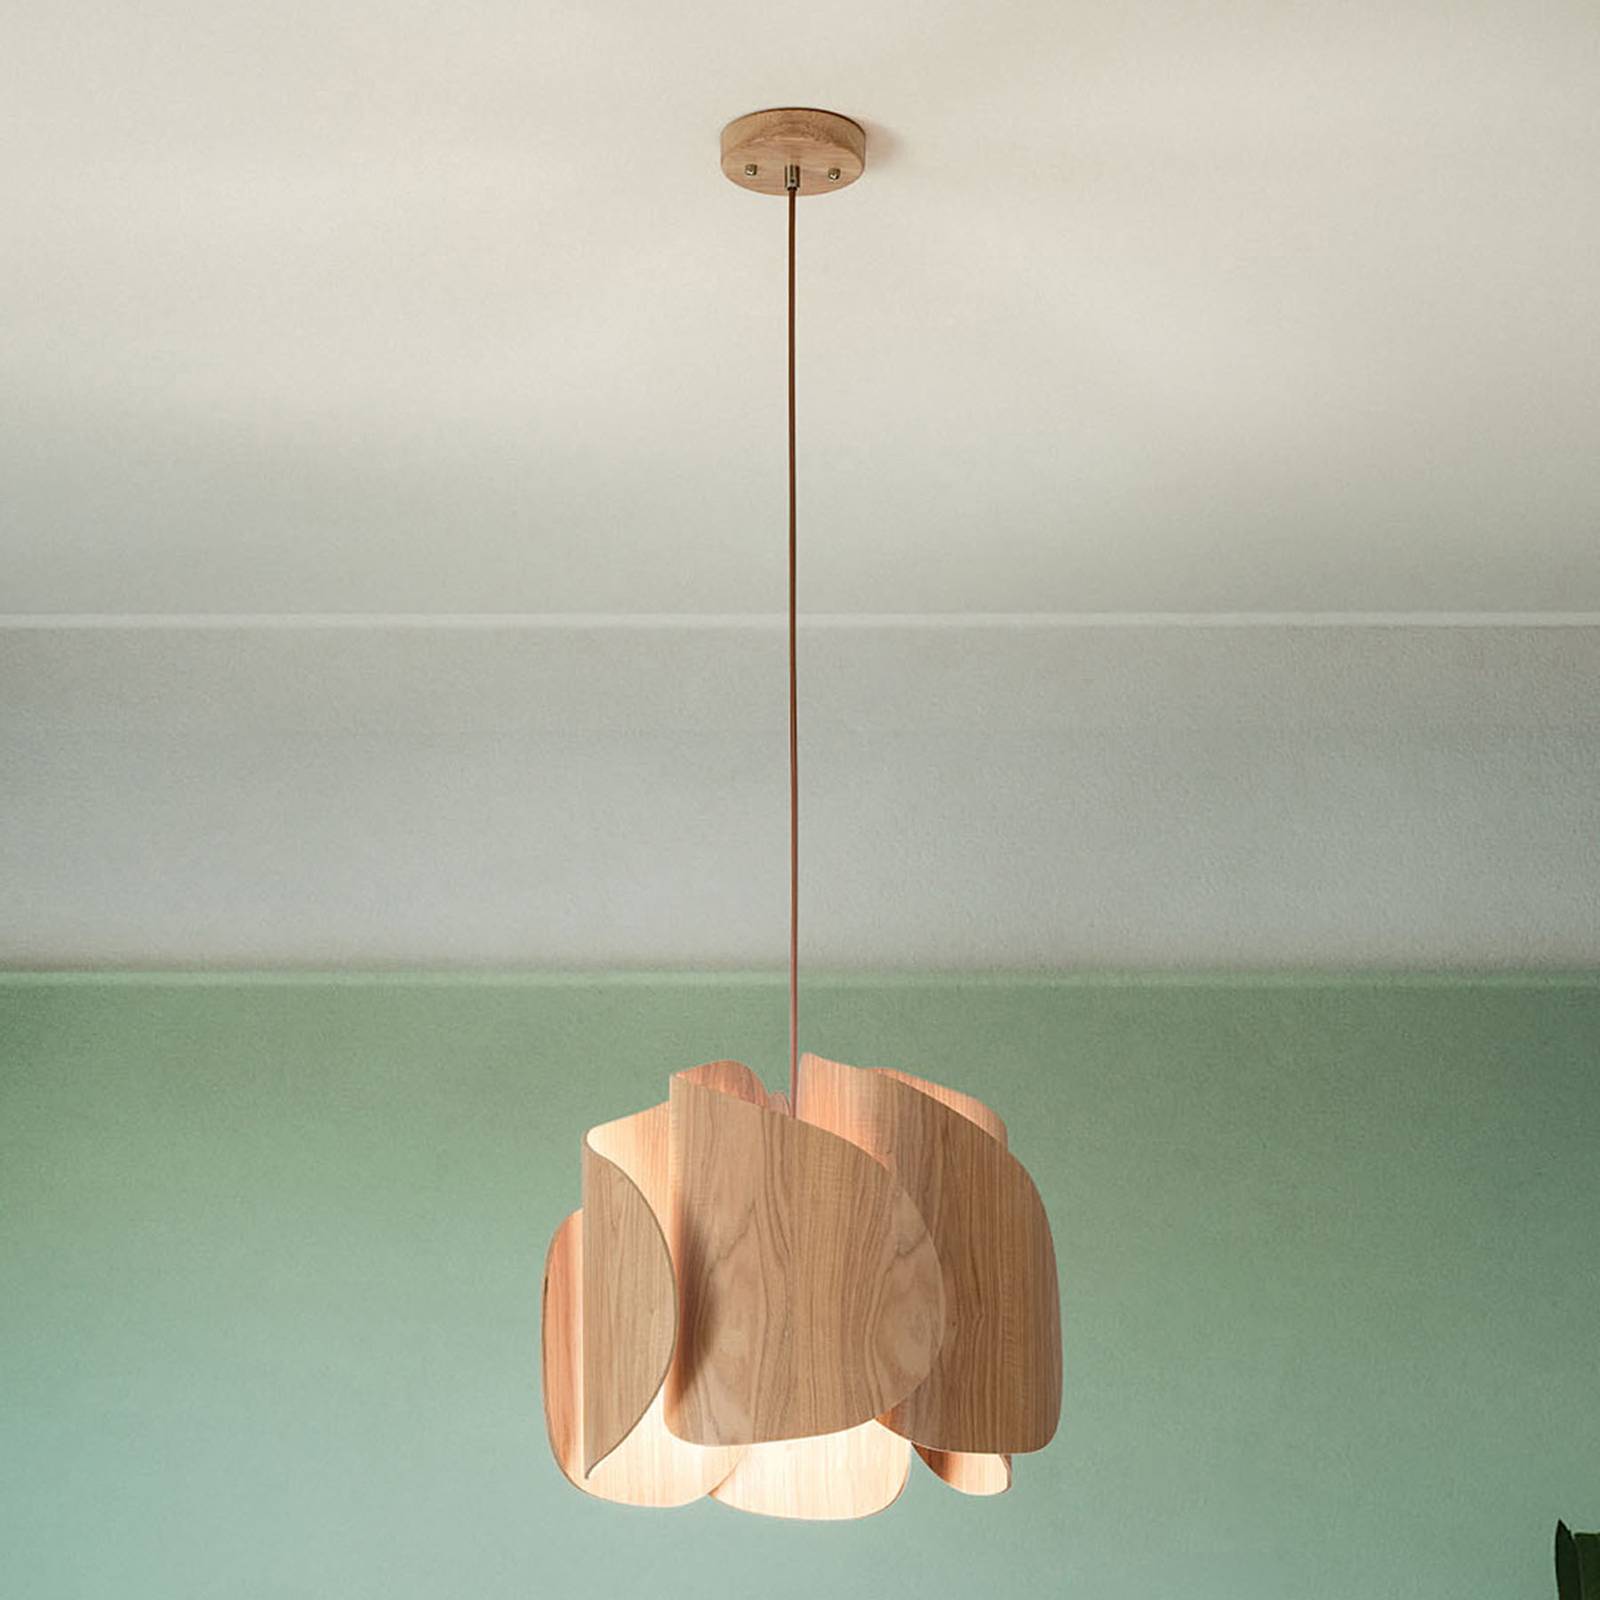 Fabas luce pevero függő lámpa kőrisfából, hajlított formájú